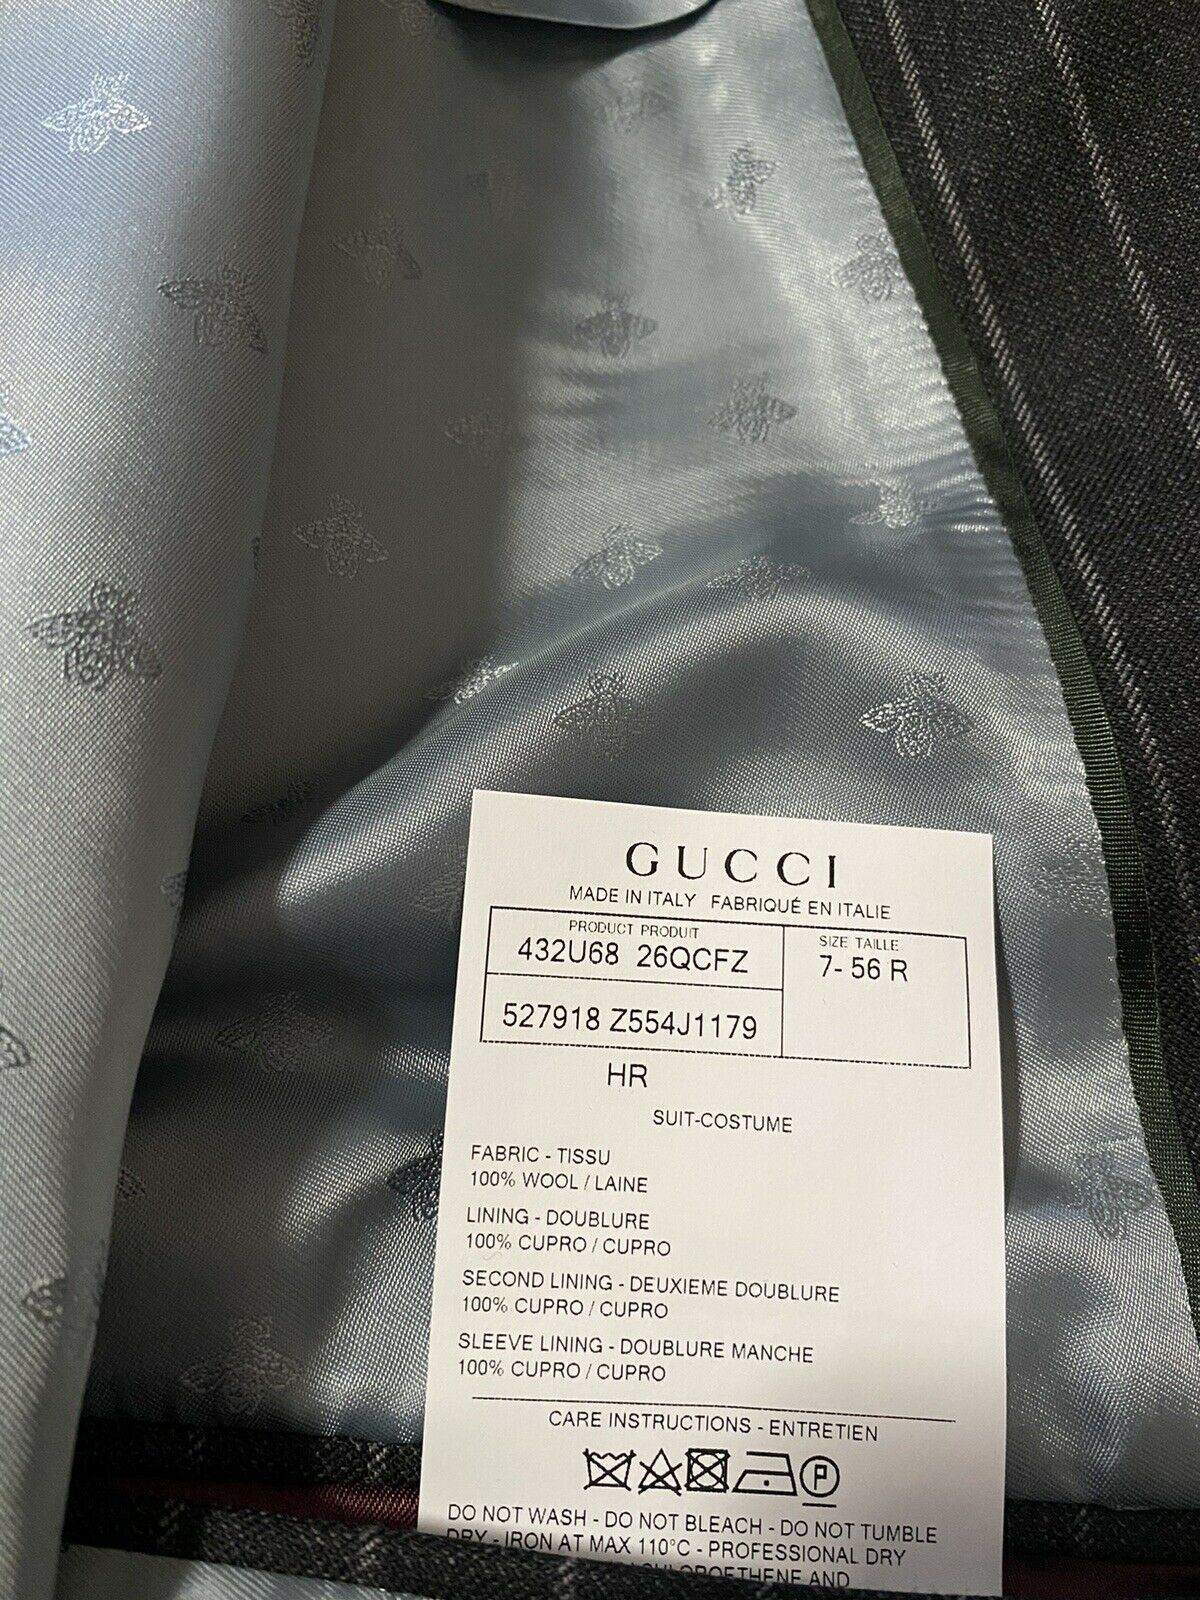 Новый мужской костюм Gucci в полоску DK Grey за 4490 долларов 46R США (56R EU) Италия